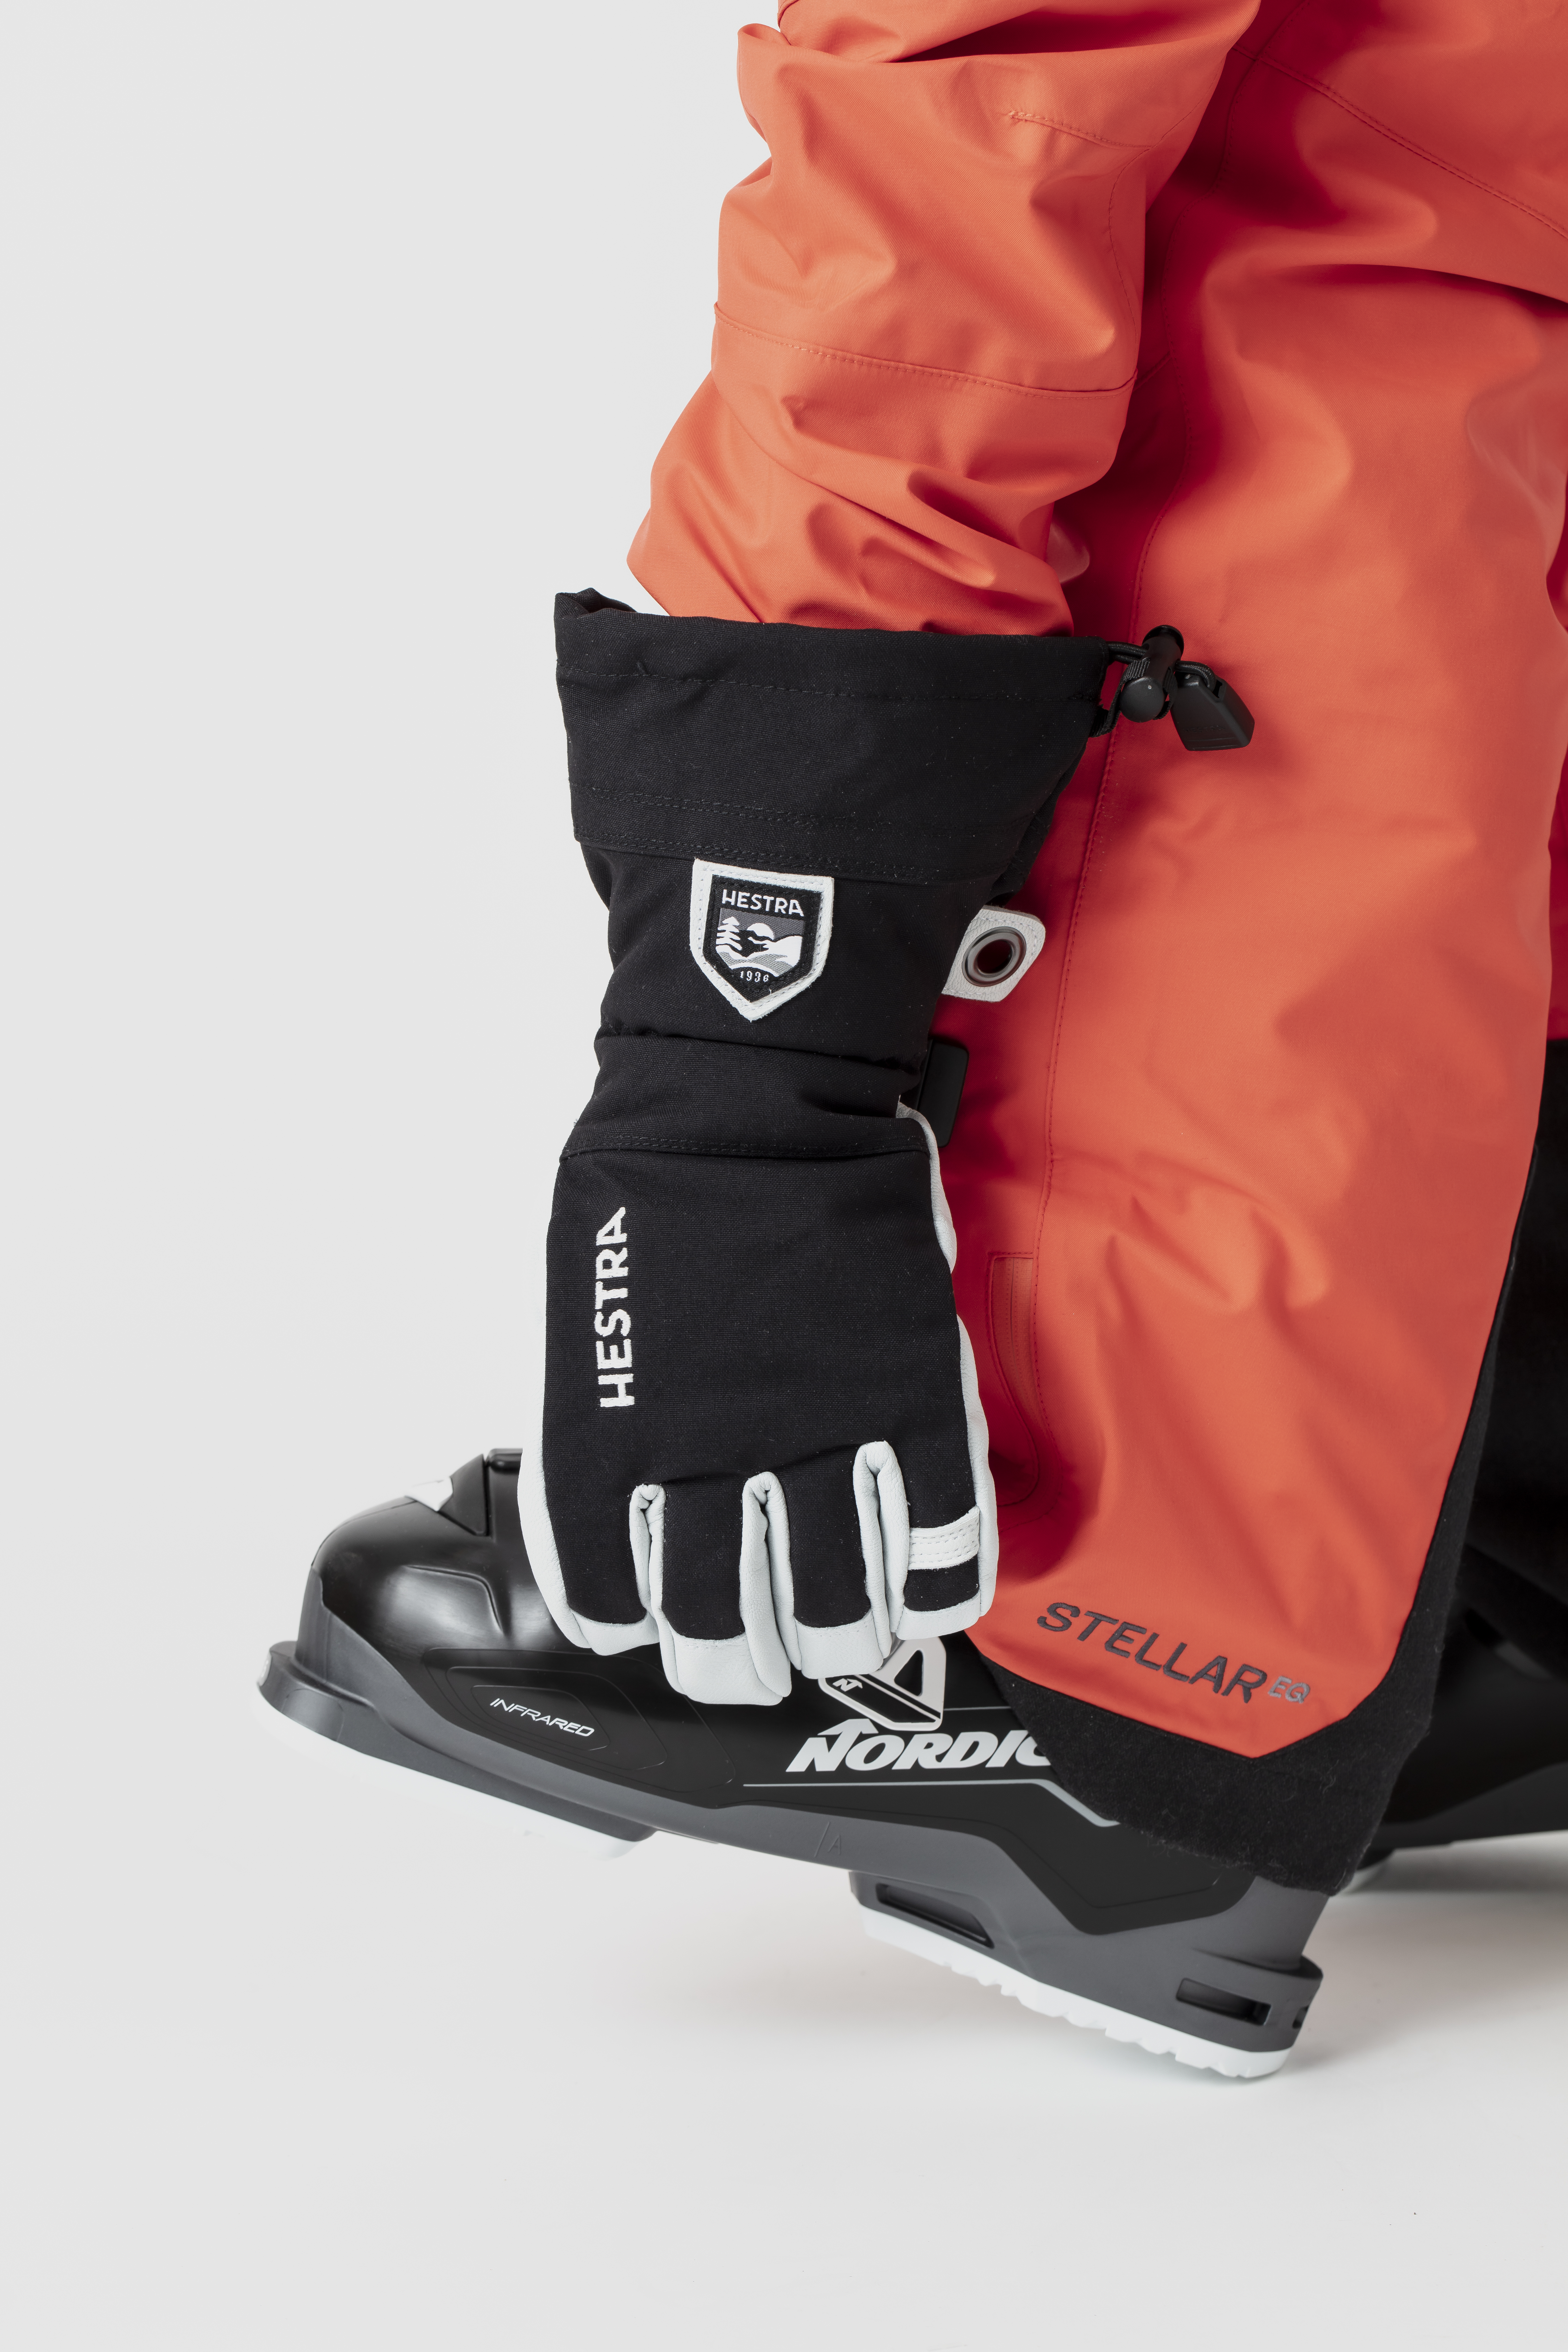 紫③ Hestra Army Leather Heli Ski Glove Classic 5-Finger Snow Glove for  Skiing, Snowboarding and Mountaineering, Mustard, 8並行輸入 